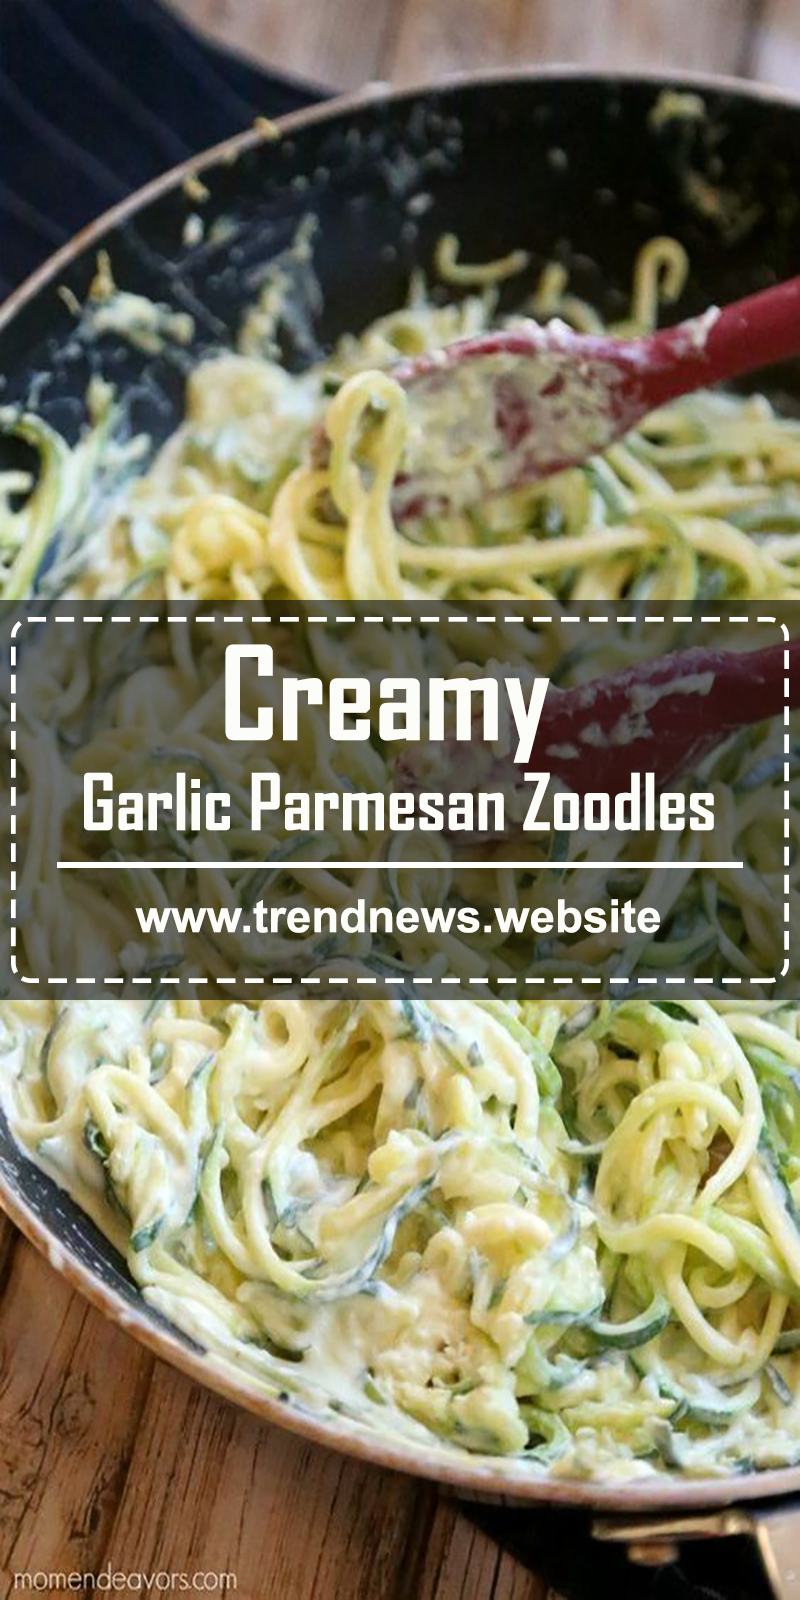 Creamy Garlic Parmesan Zoodles